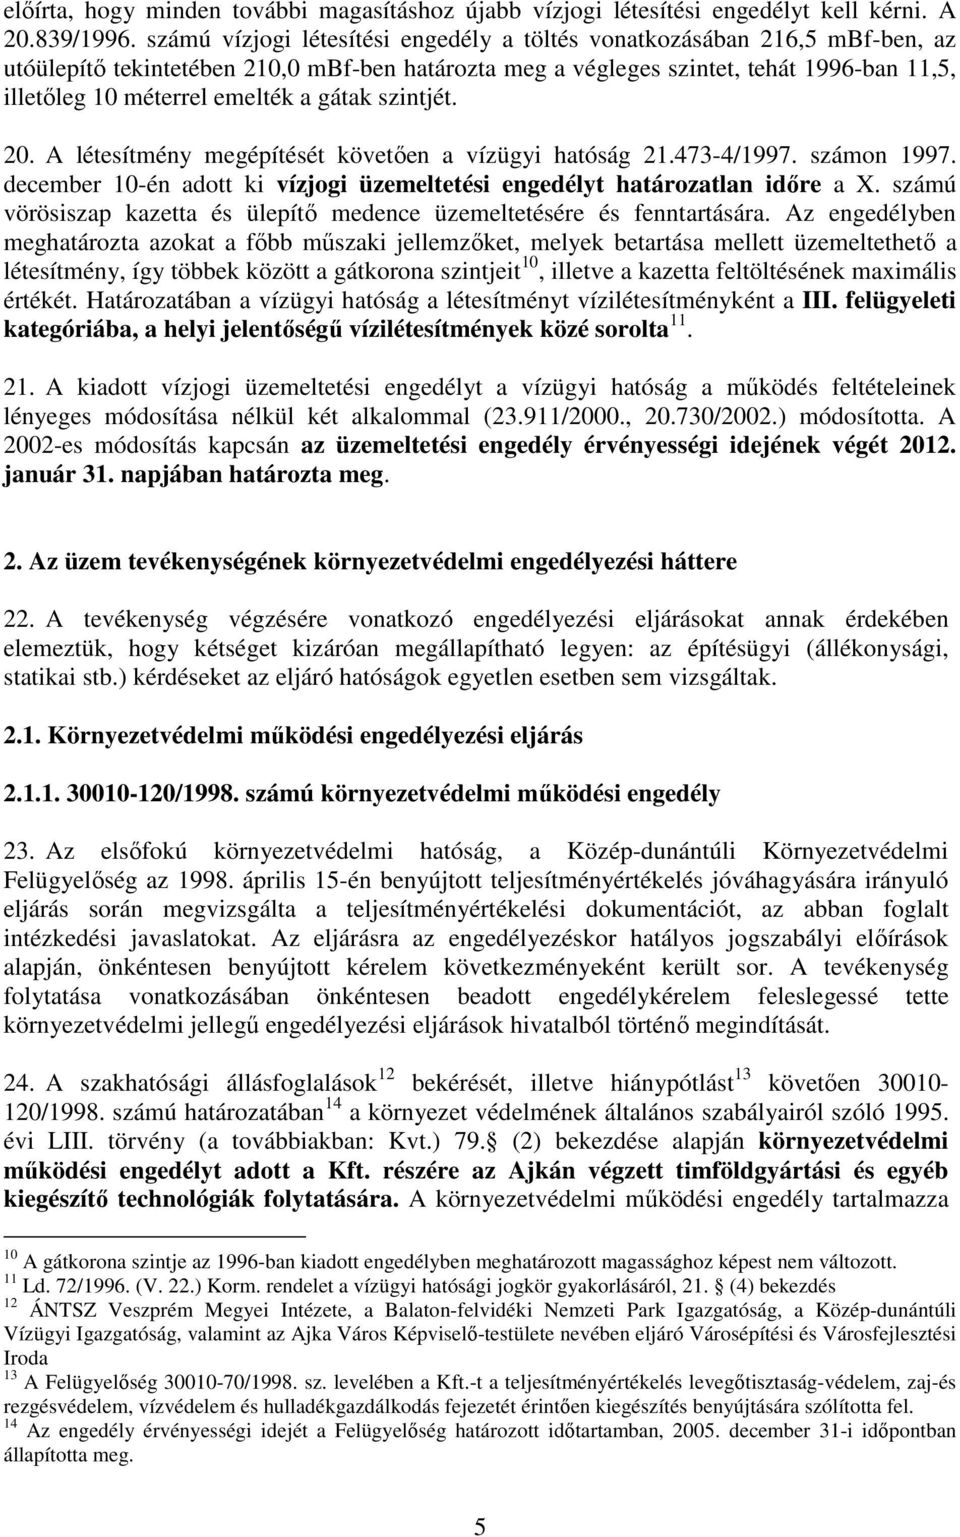 a gátak szintjét. 20. A létesítmény megépítését követıen a vízügyi hatóság 21.473-4/1997. számon 1997. december 10-én adott ki vízjogi üzemeltetési engedélyt határozatlan idıre a X.